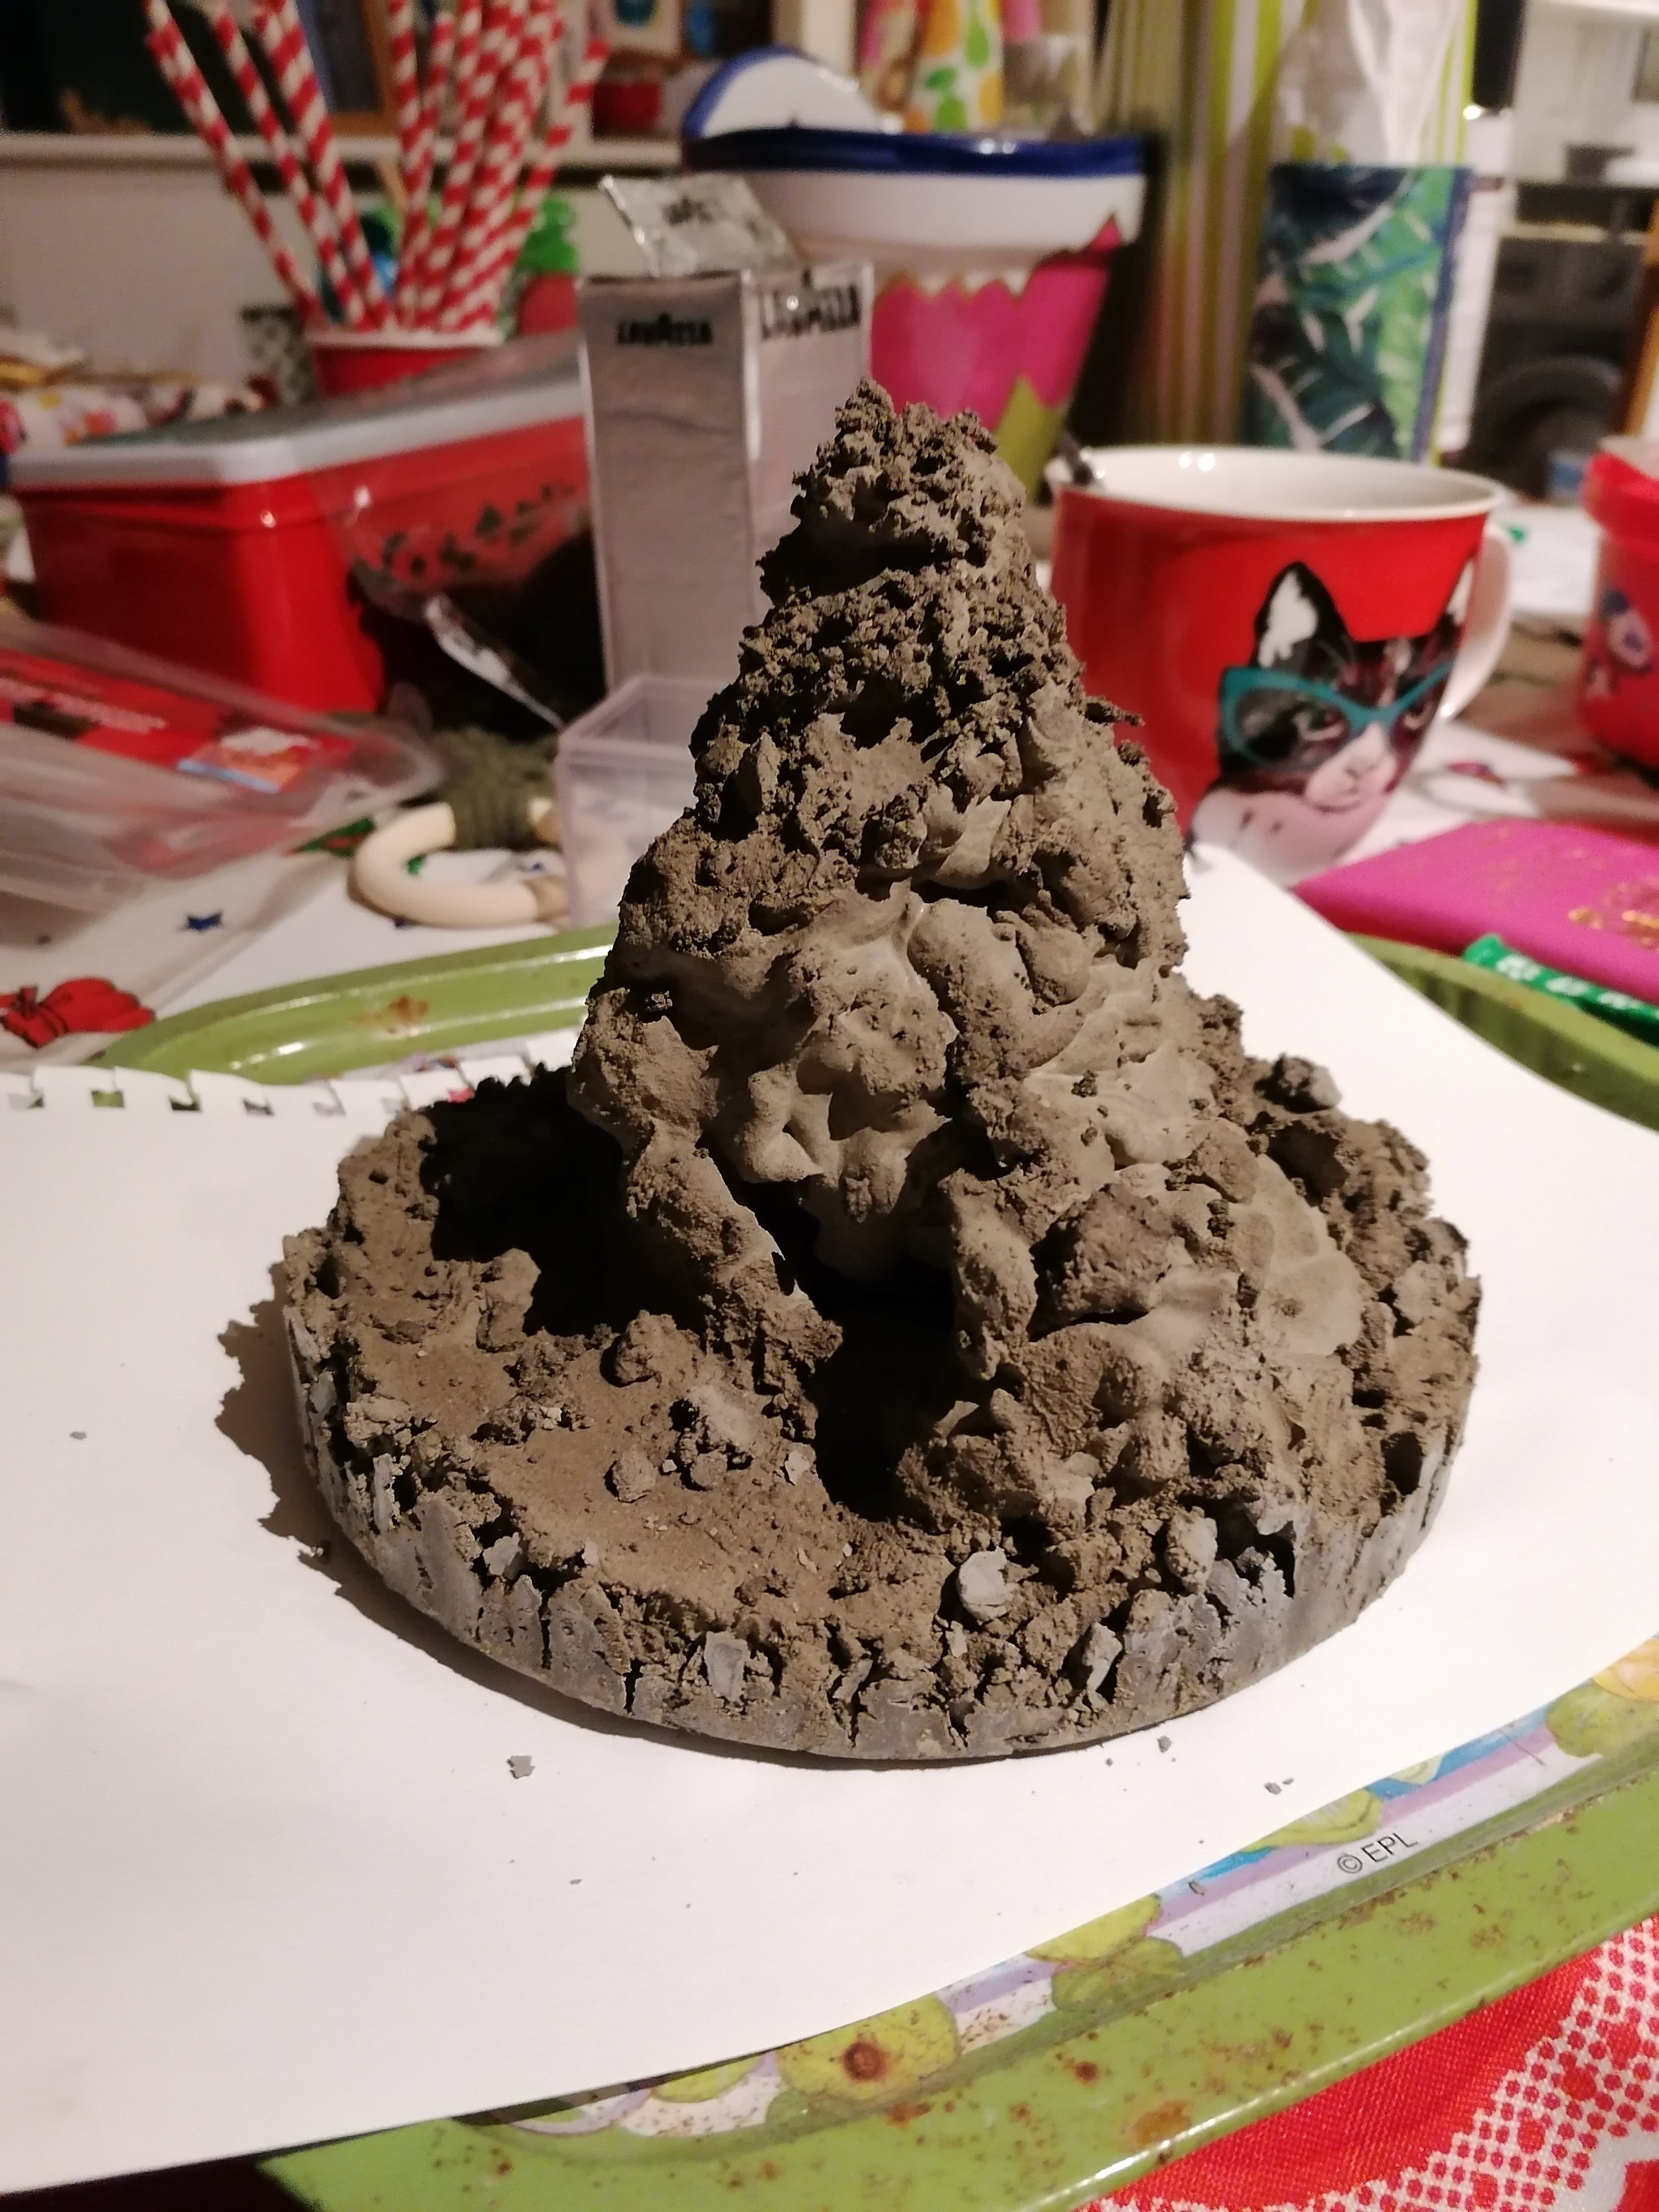 Molehill in progress